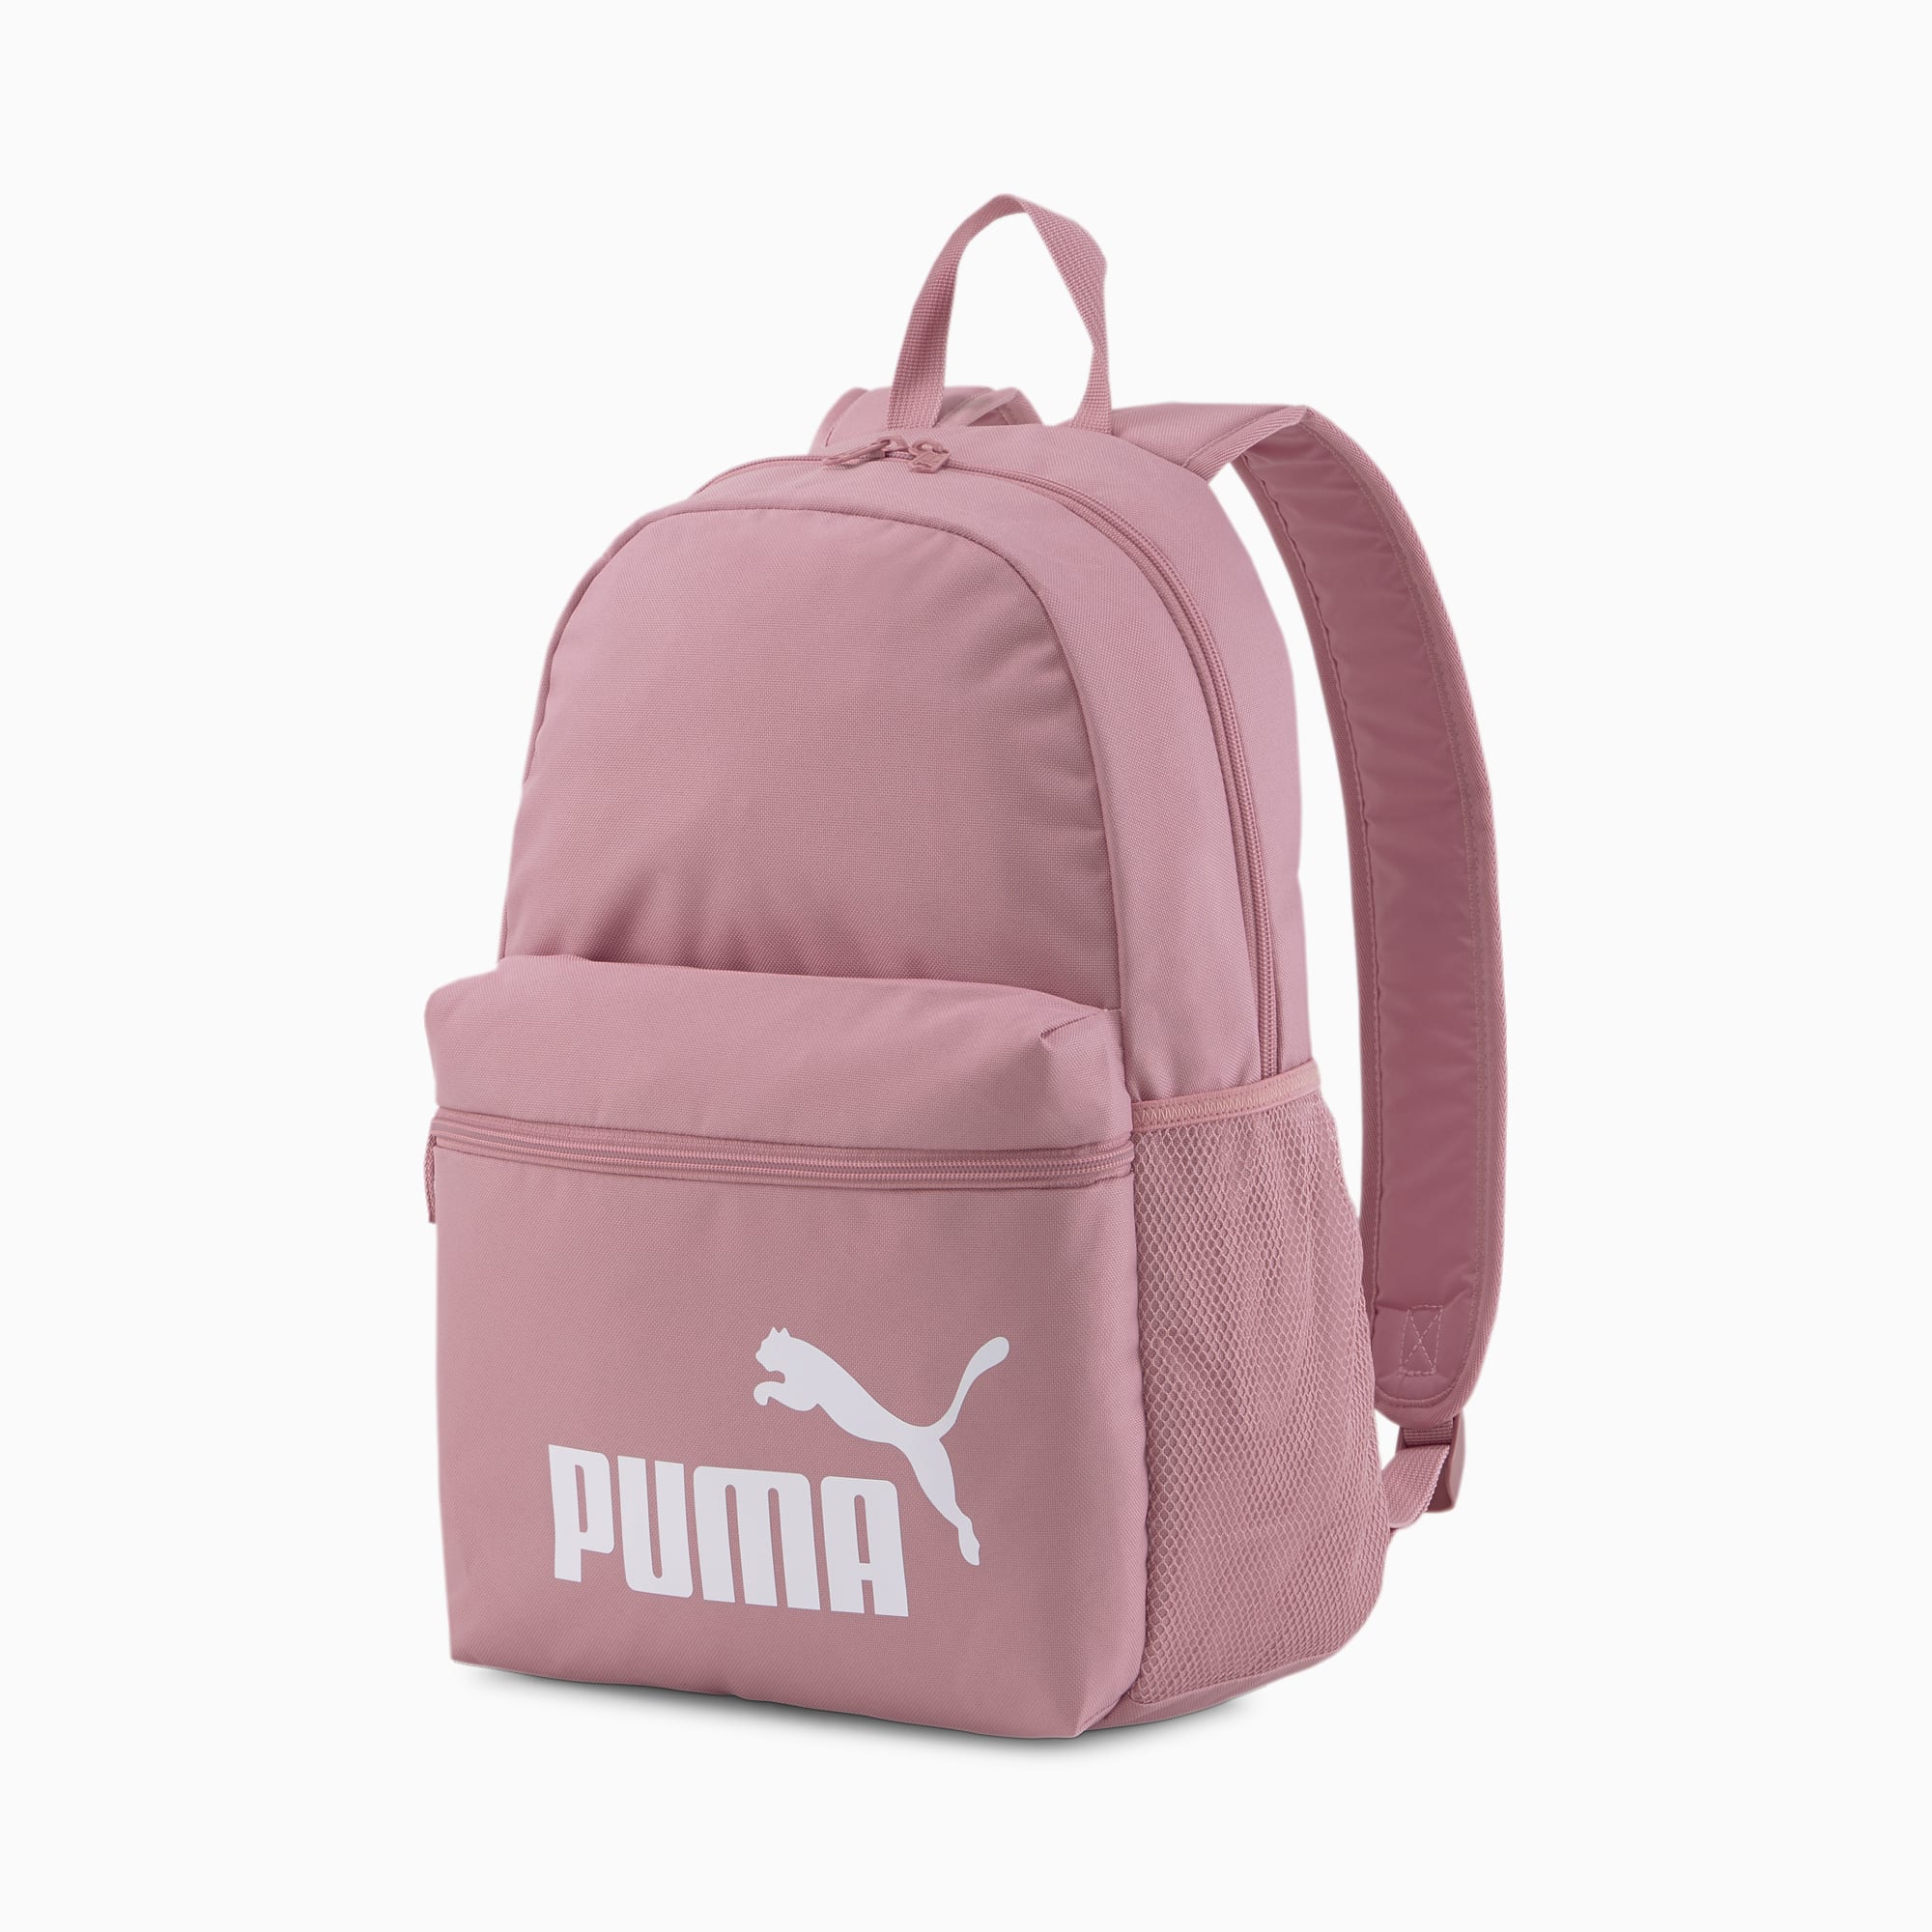 Puma公式 メンズ バッグ プーマオンラインストア